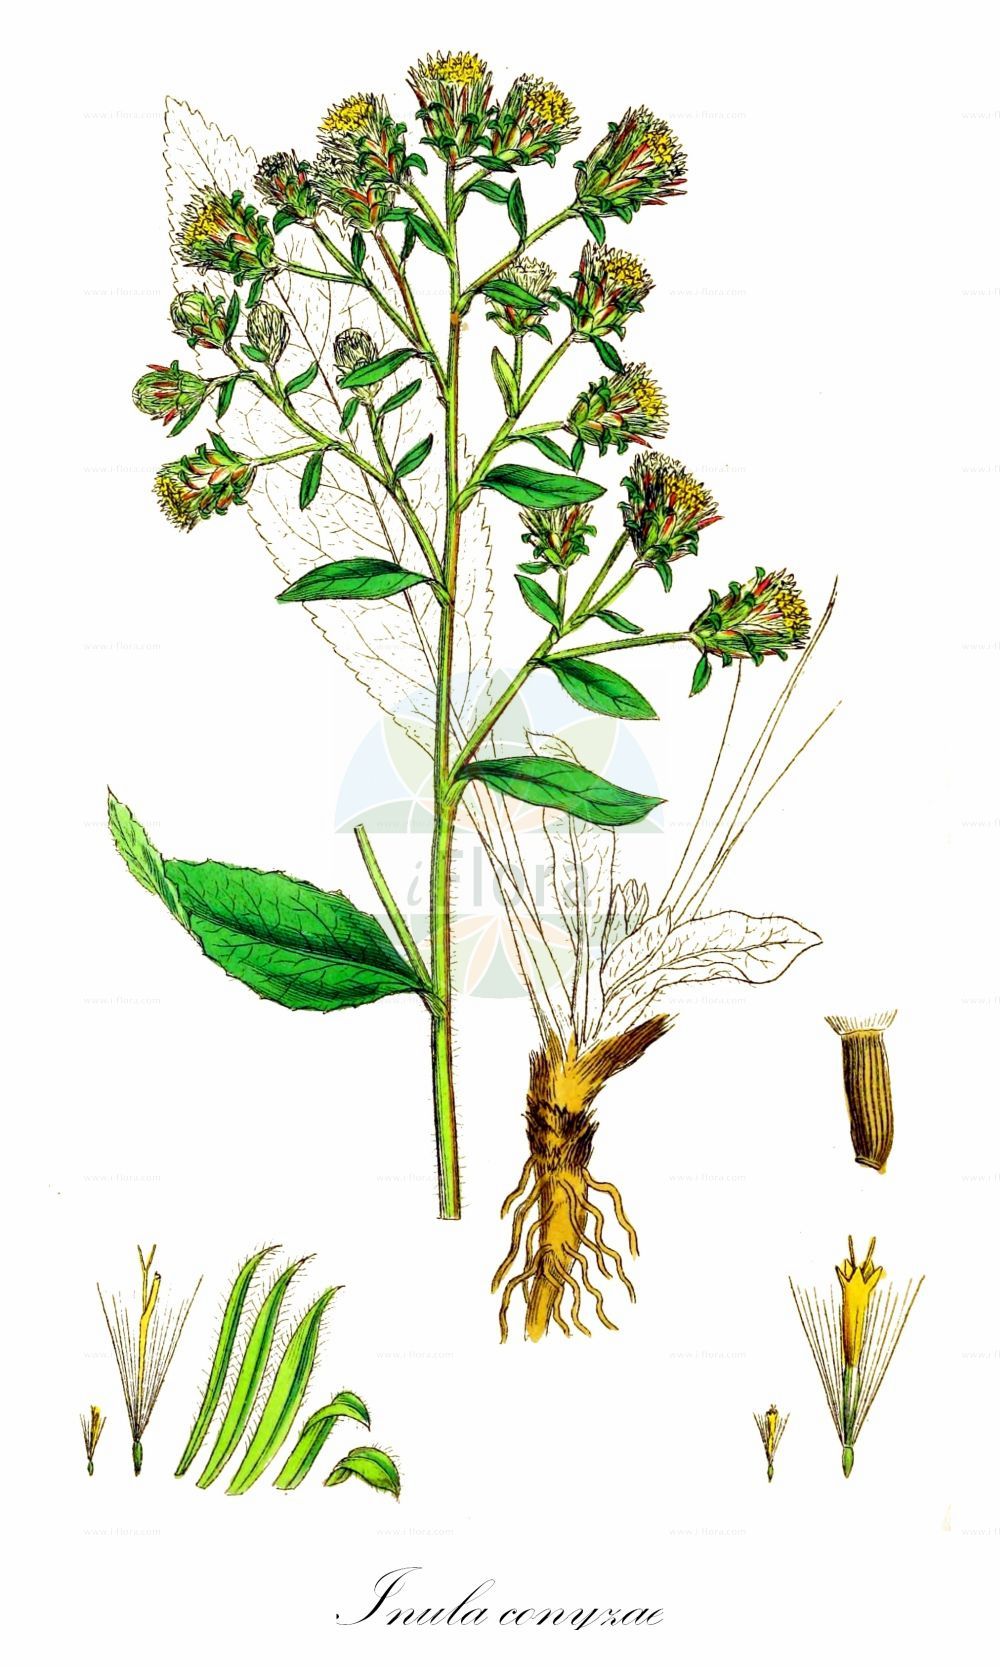 Historische Abbildung von Inula conyzae (Dürrwurz - Ploughman's-spikenard). Das Bild zeigt Blatt, Bluete, Frucht und Same. ---- Historical Drawing of Inula conyzae (Dürrwurz - Ploughman's-spikenard). The image is showing leaf, flower, fruit and seed.(Inula conyzae,Dürrwurz,Ploughman's-spikenard,Aster conyzae,Conyza squarrosa,Conyza vulgaris,Inula conyzae,Inula vulgaris,Jacobaea conzyae,Duerrwurz,Duerrwurz-Alant,Sparriger Alant,Ploughman's-spikenard,Inula,Alant,Yellowhead,Asteraceae,Korbblütengewächse,Daisy family,Blatt,Bluete,Frucht,Same,leaf,flower,fruit,seed,Sowerby (1790-1813))